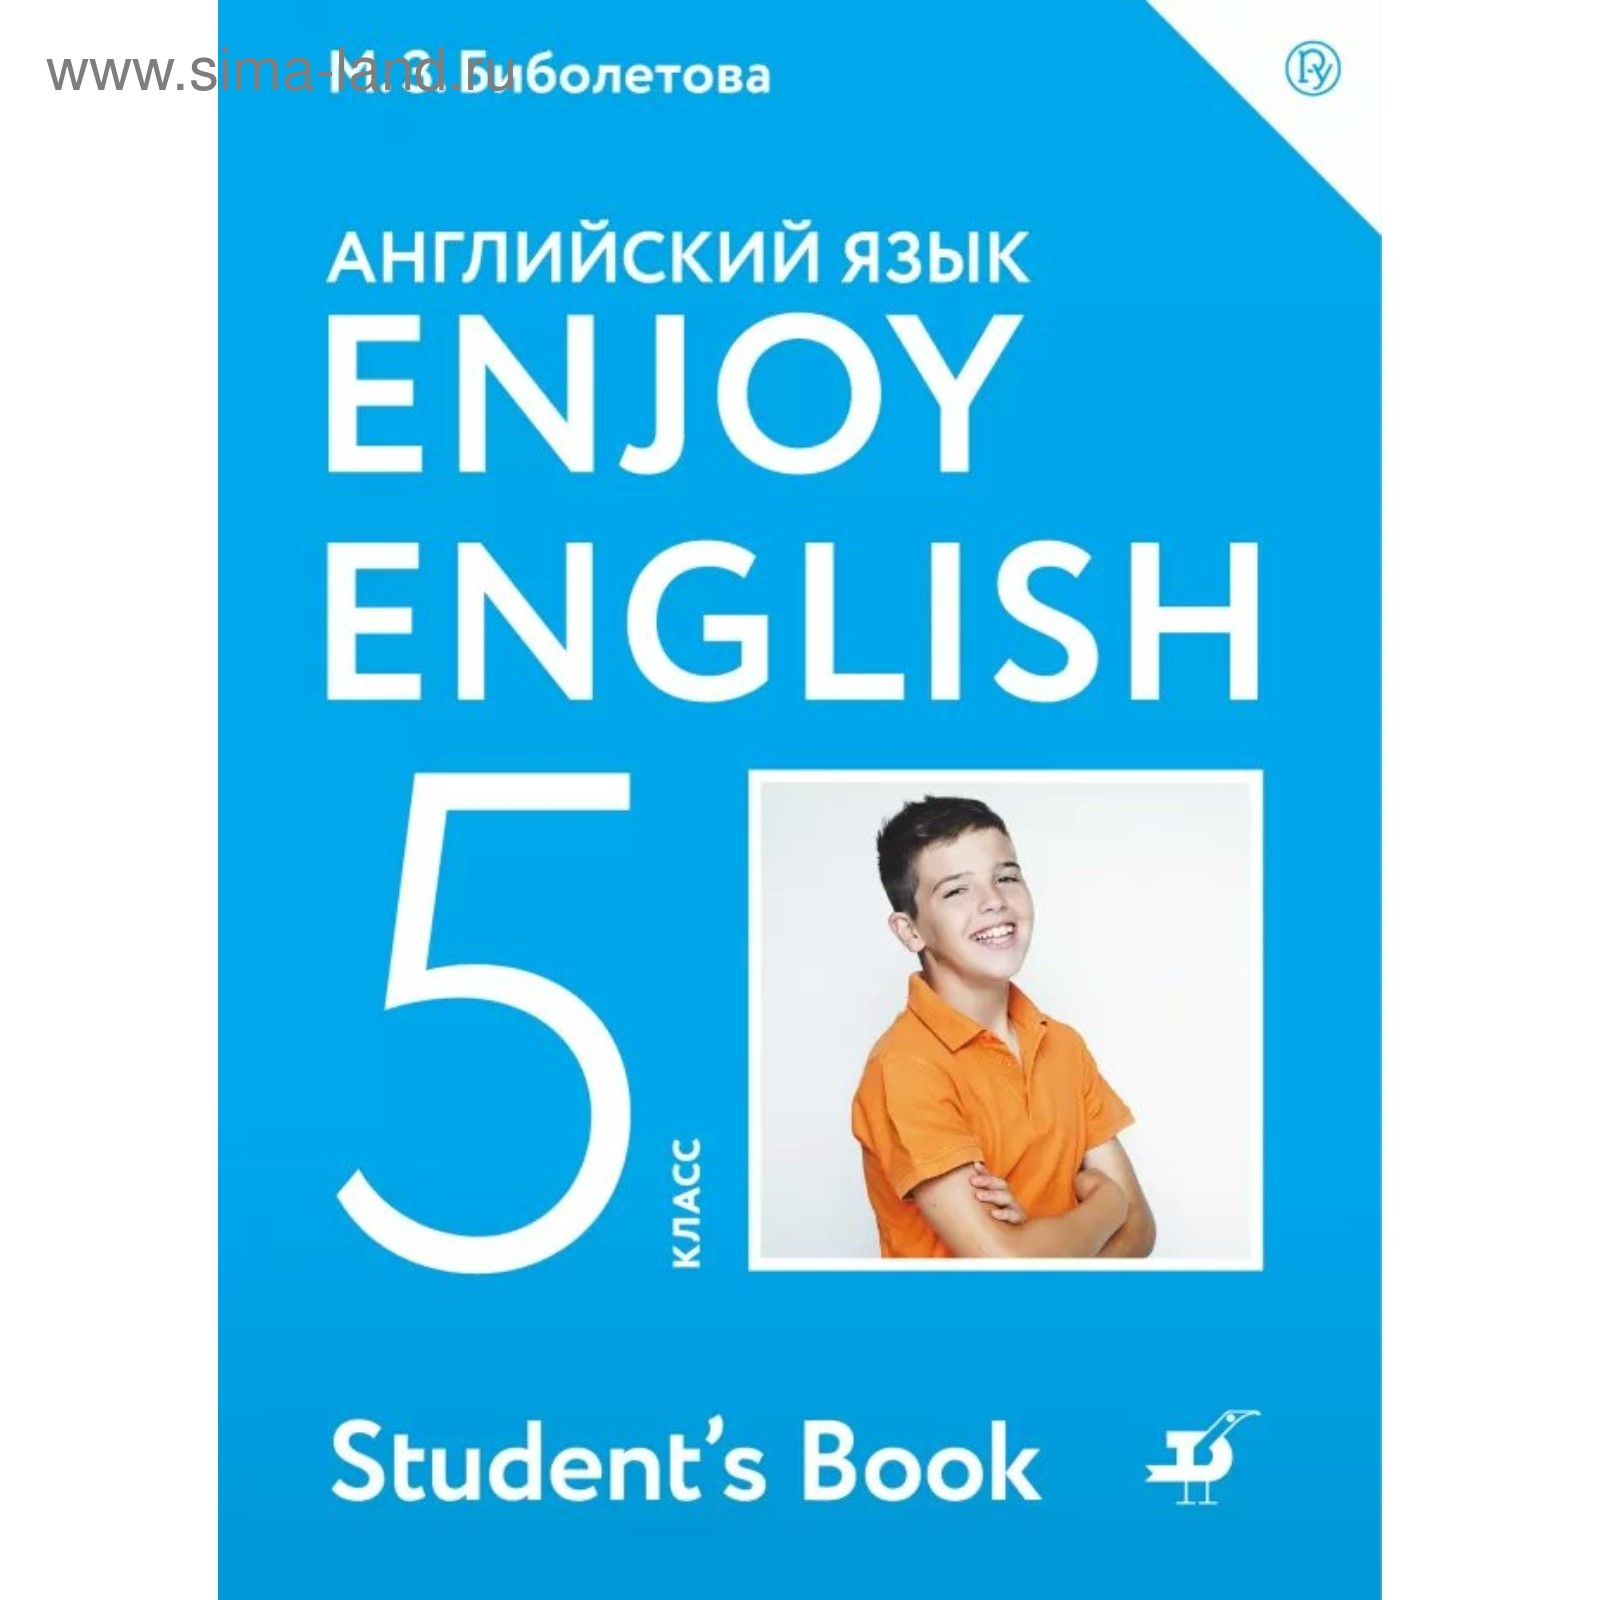 Английский Язык. Enjoy English. 5 Класс. Учебник. Биболетова М. З.